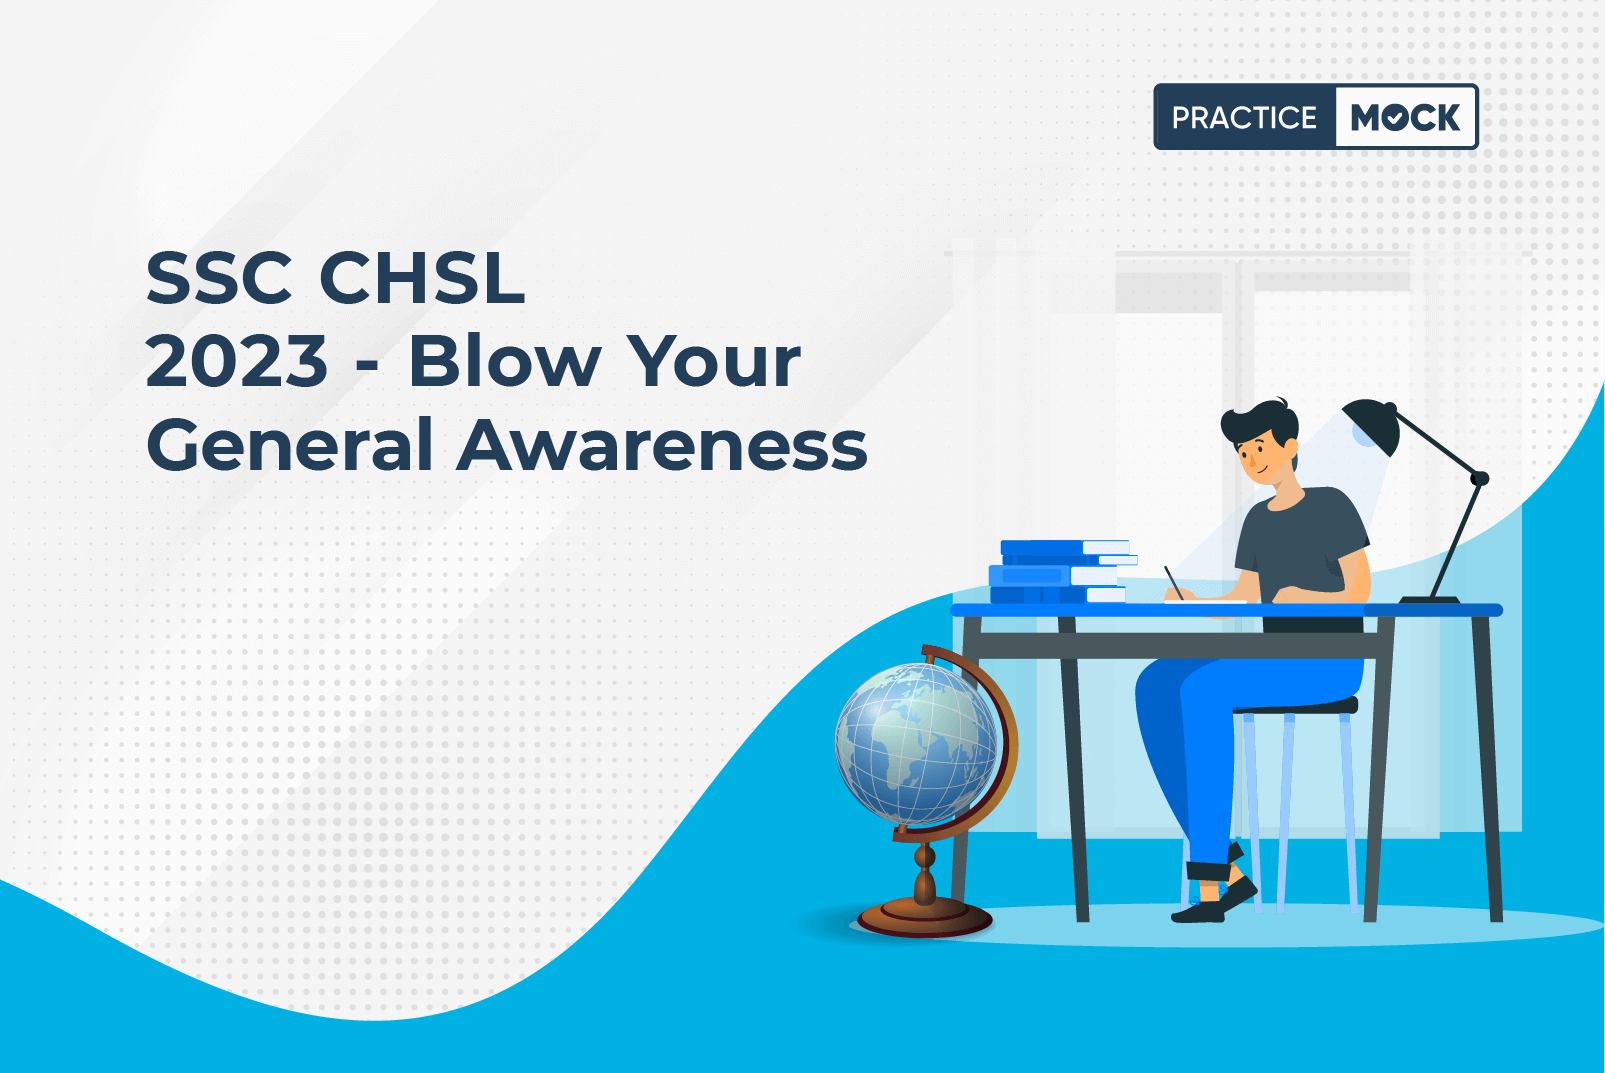 SSC CHSL 2023 - Blow Your General Awareness